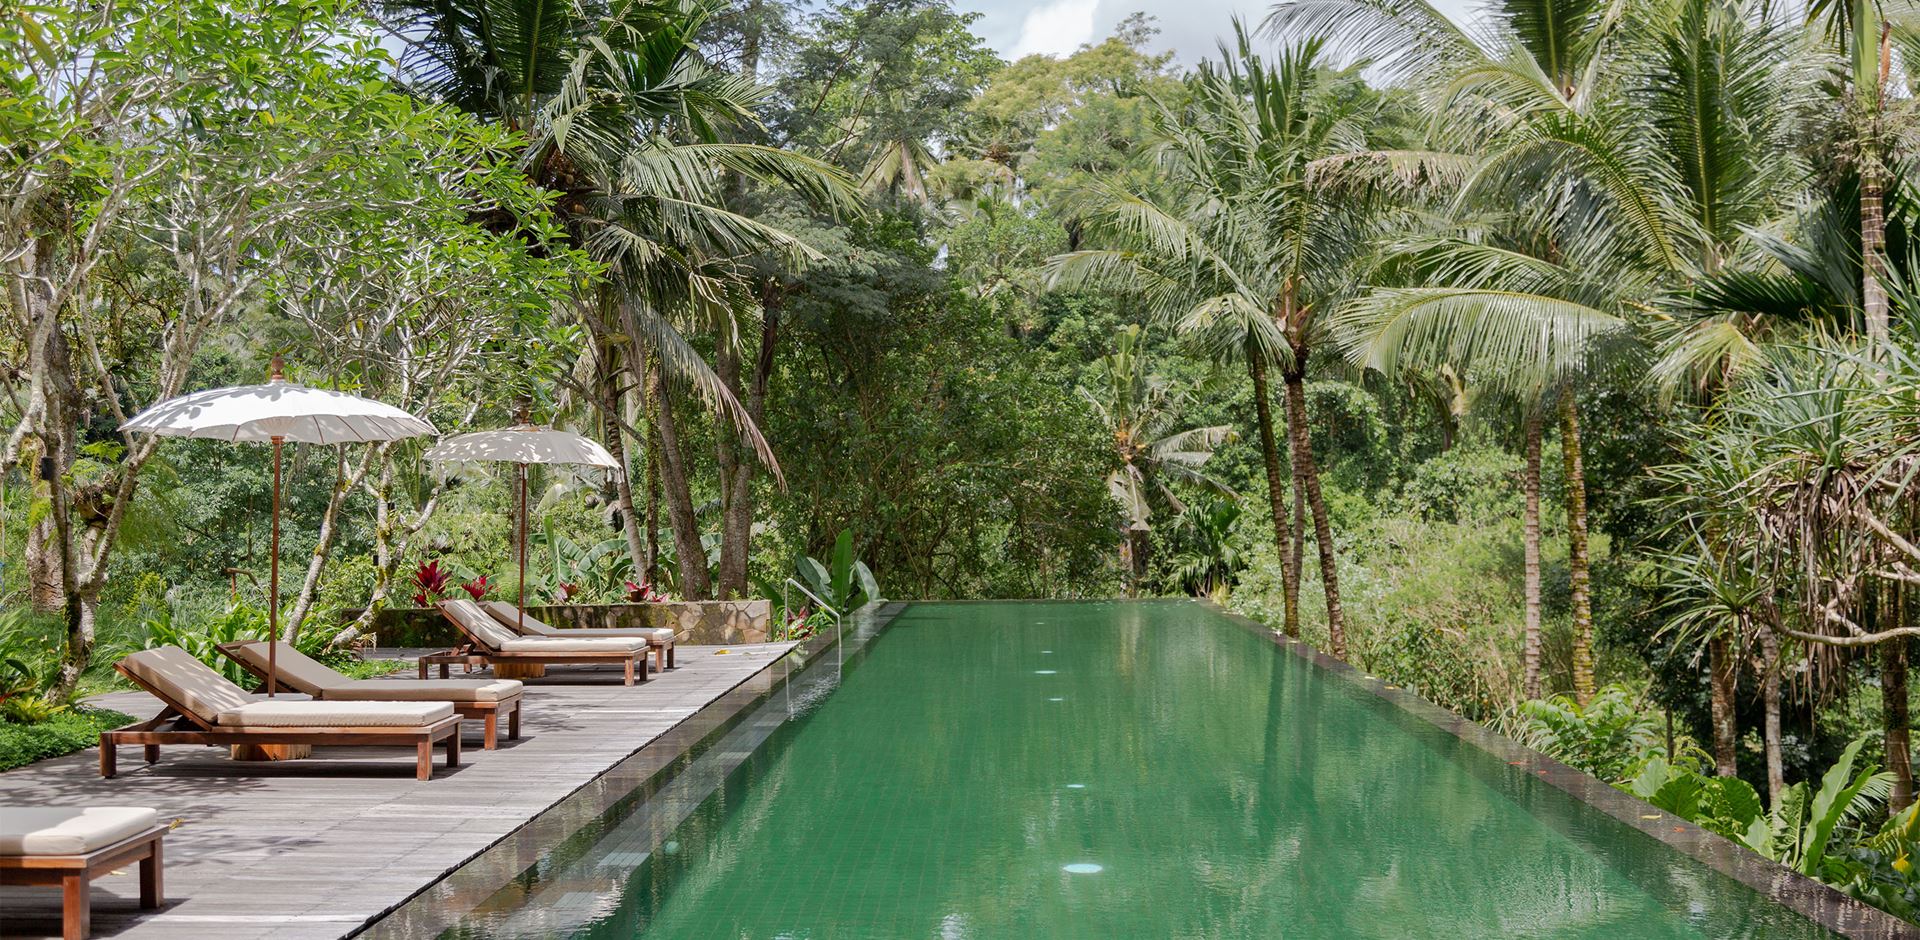 Indonesien, Bali, Ubud, Komaneka Bisma, Pool Area